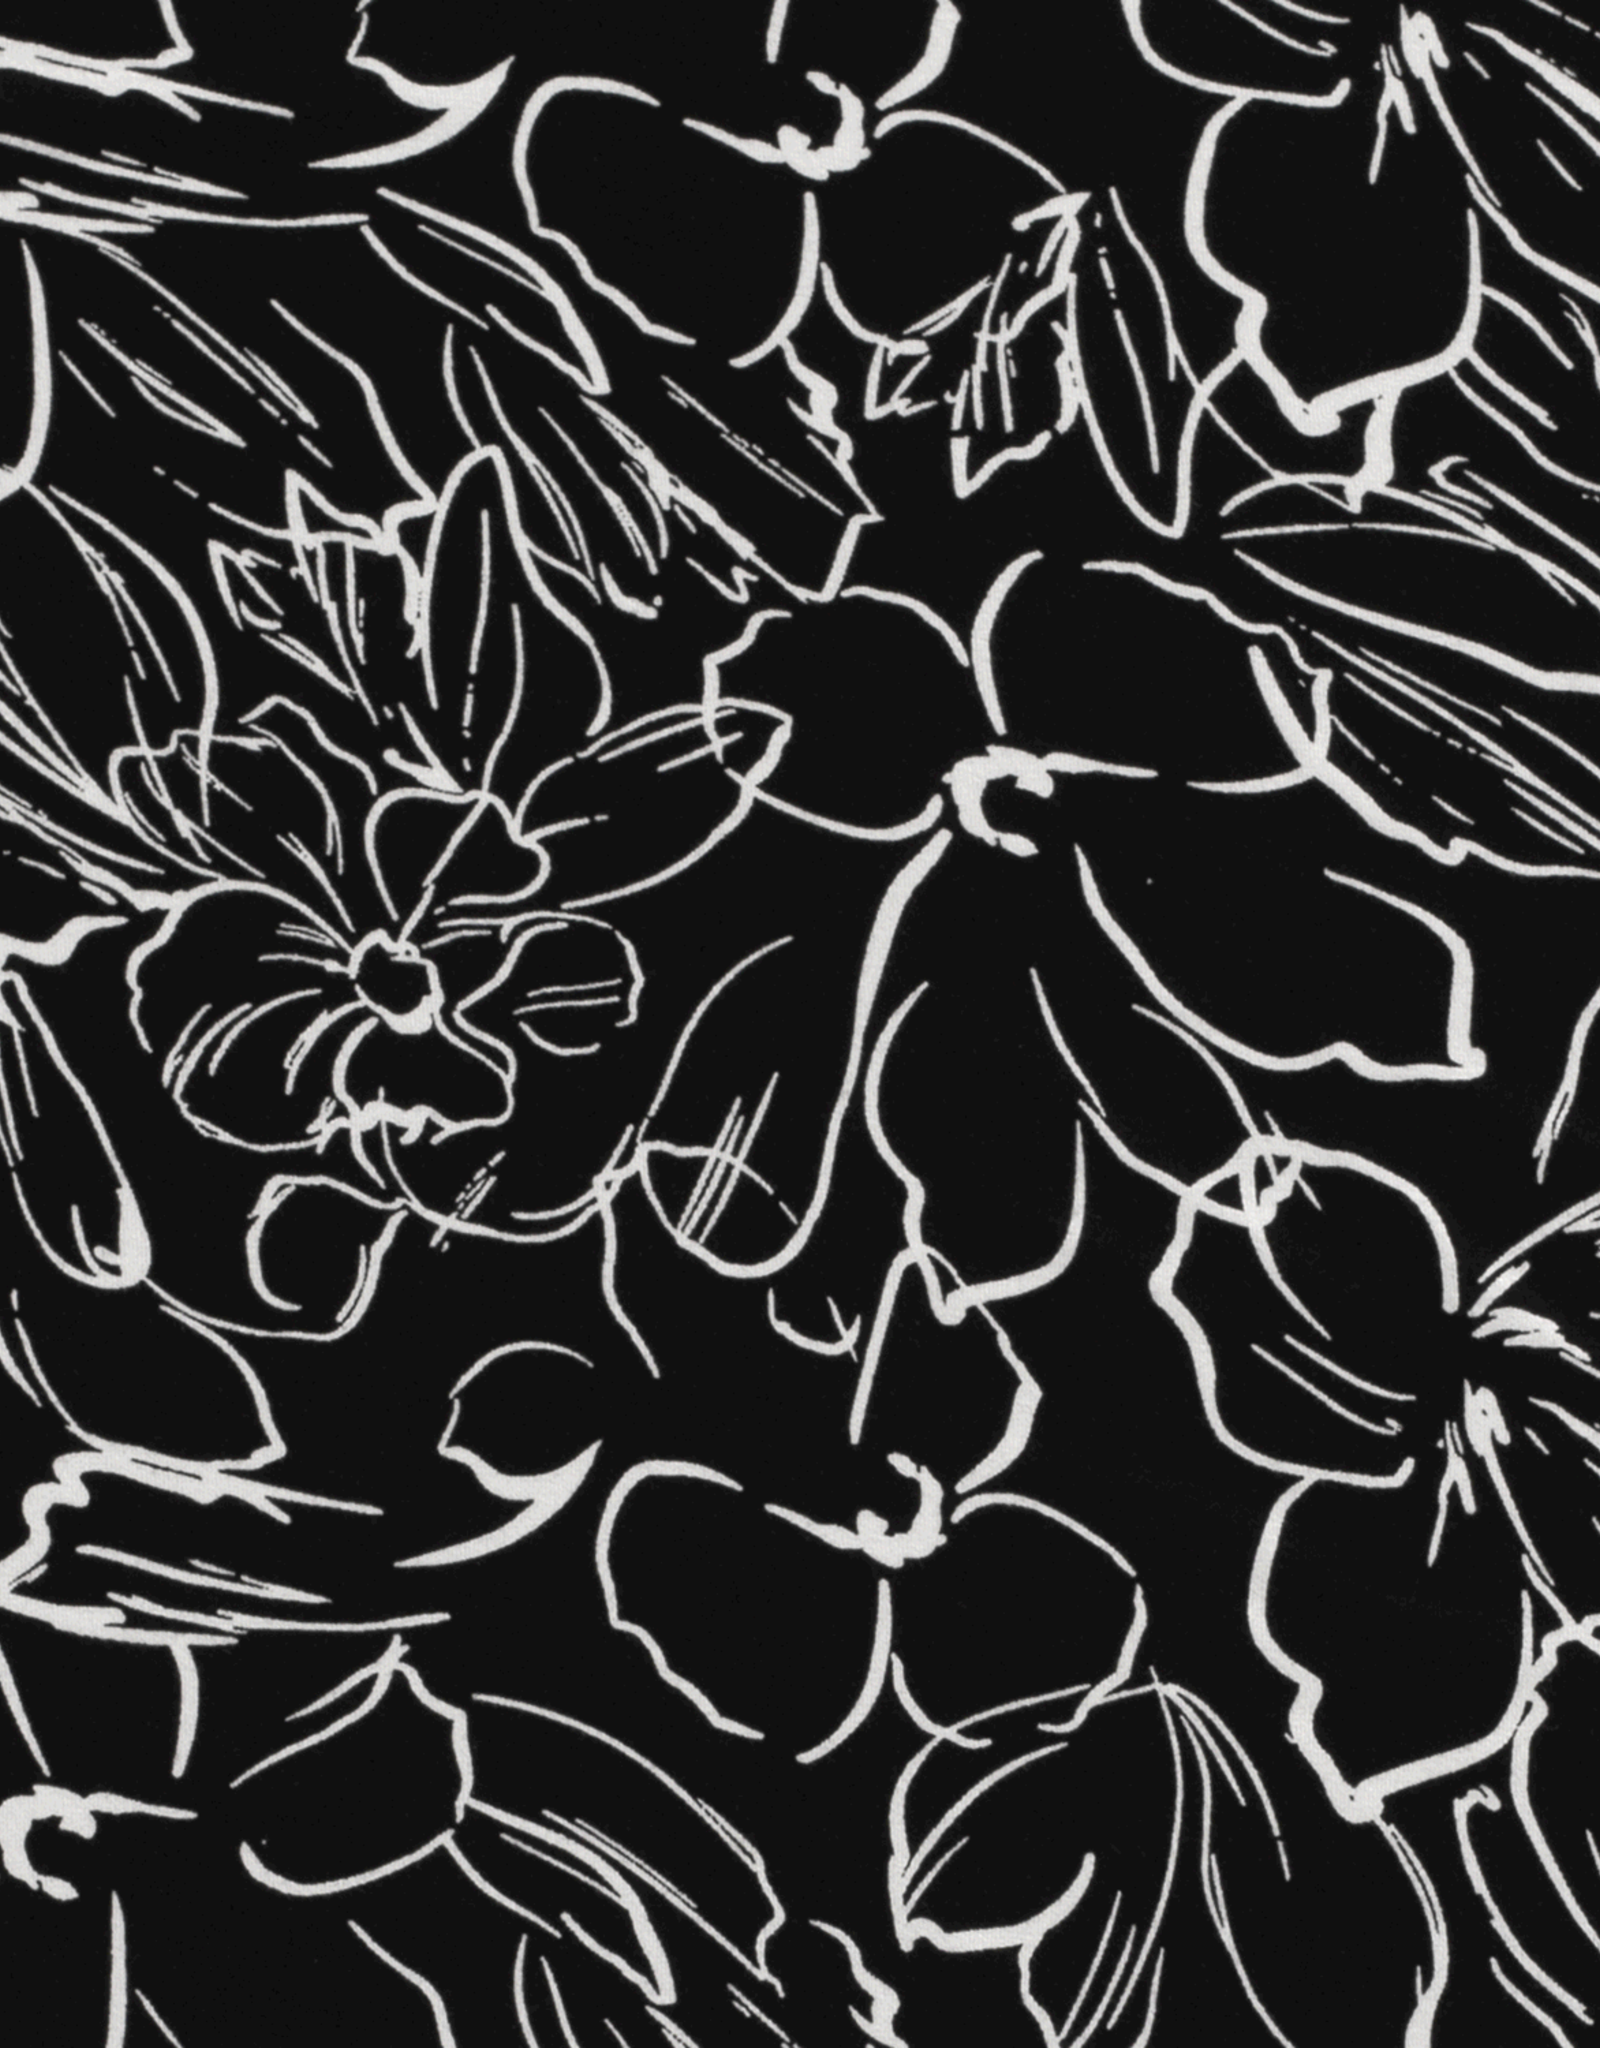 Stoffenschuur selectie Viscosejersey vortex two-tone grote lijnbloemen zwart